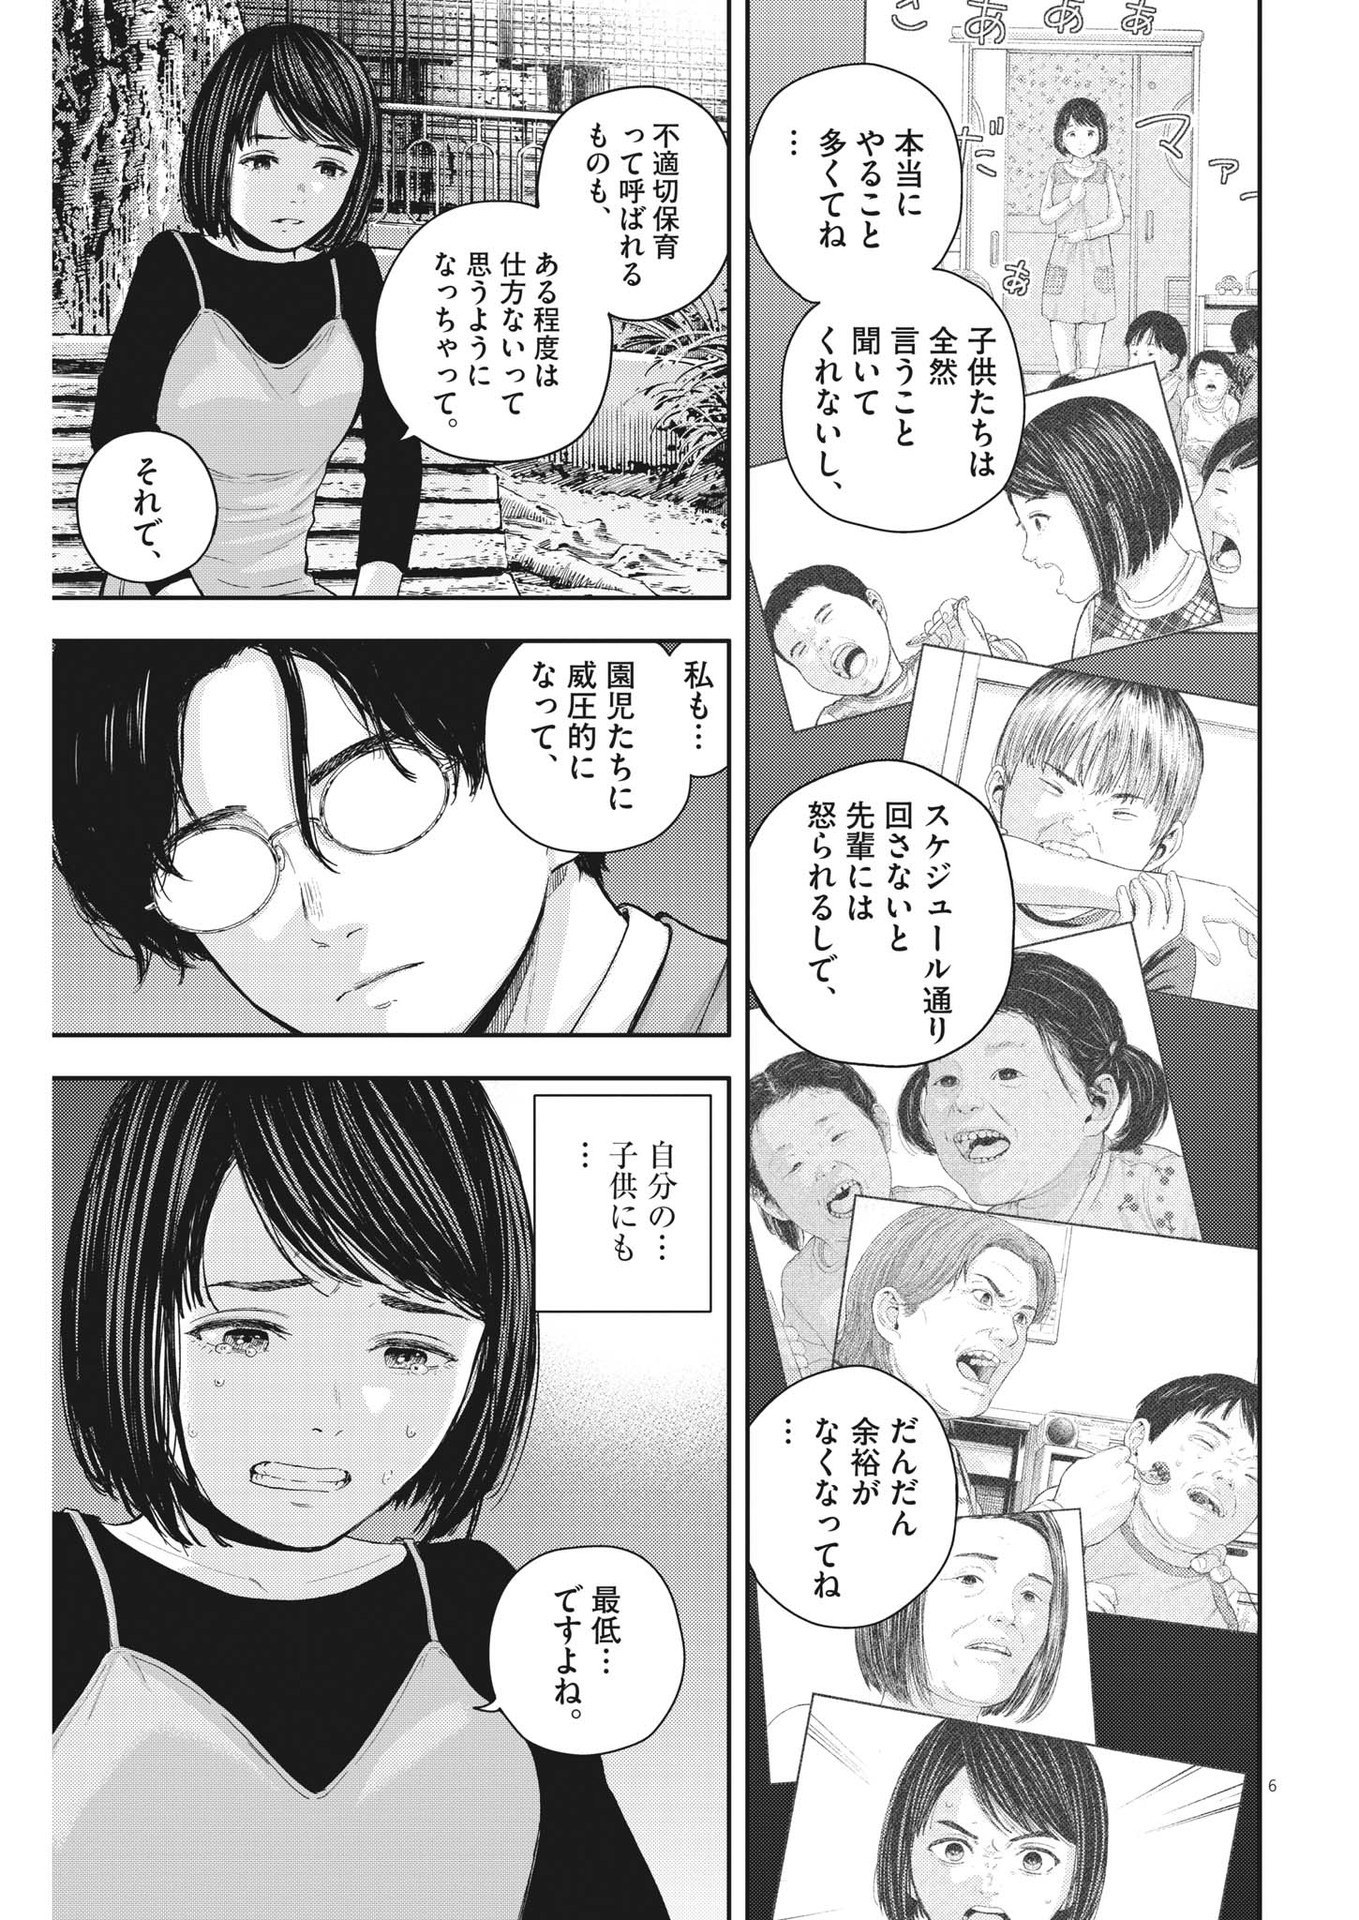 Yumenashi-sensei no Shinroshidou - Chapter 24 - Page 6